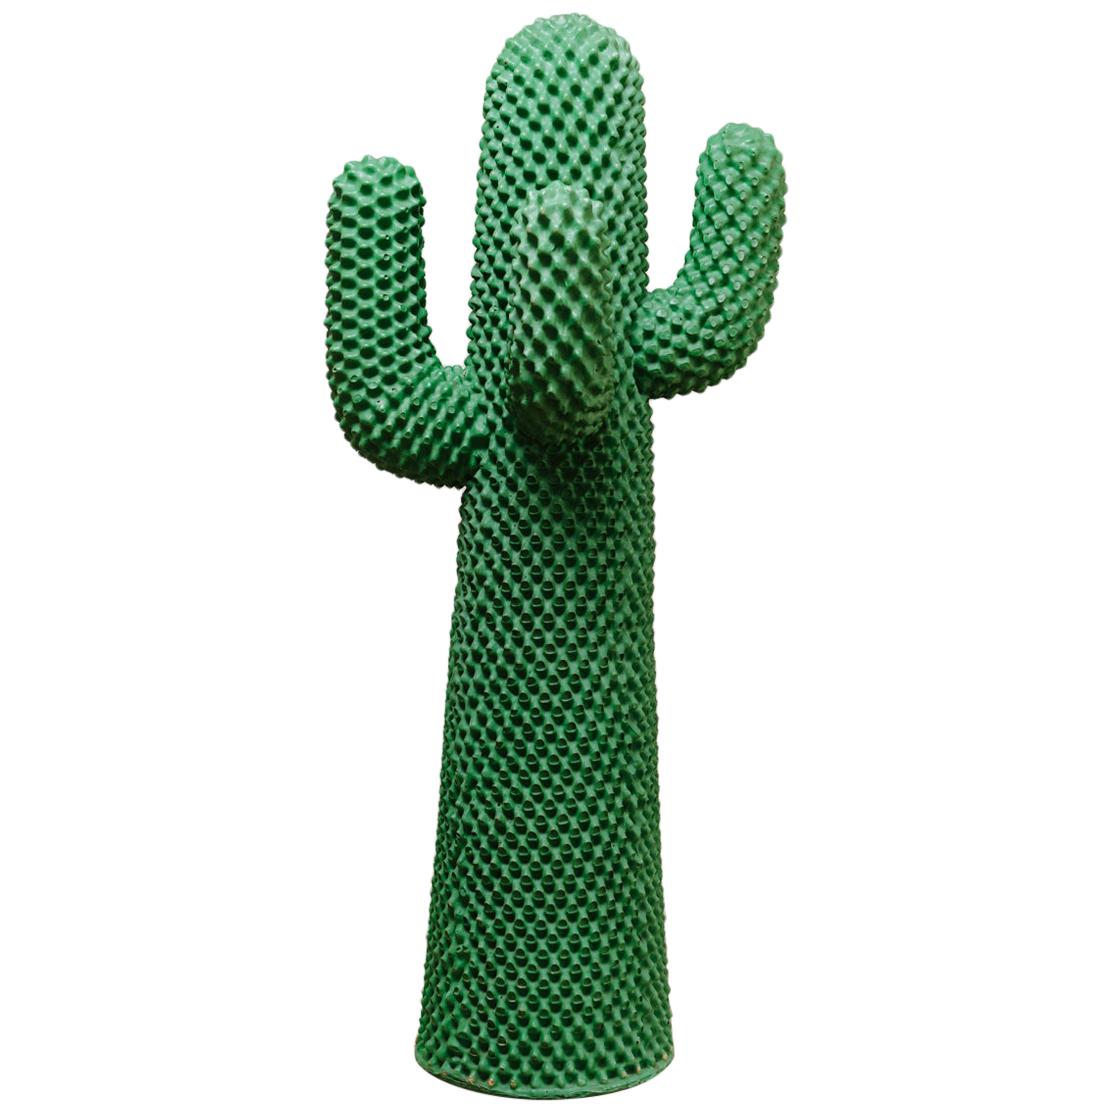 Cactus by Guido Drocco and Franco Mello for Gufram